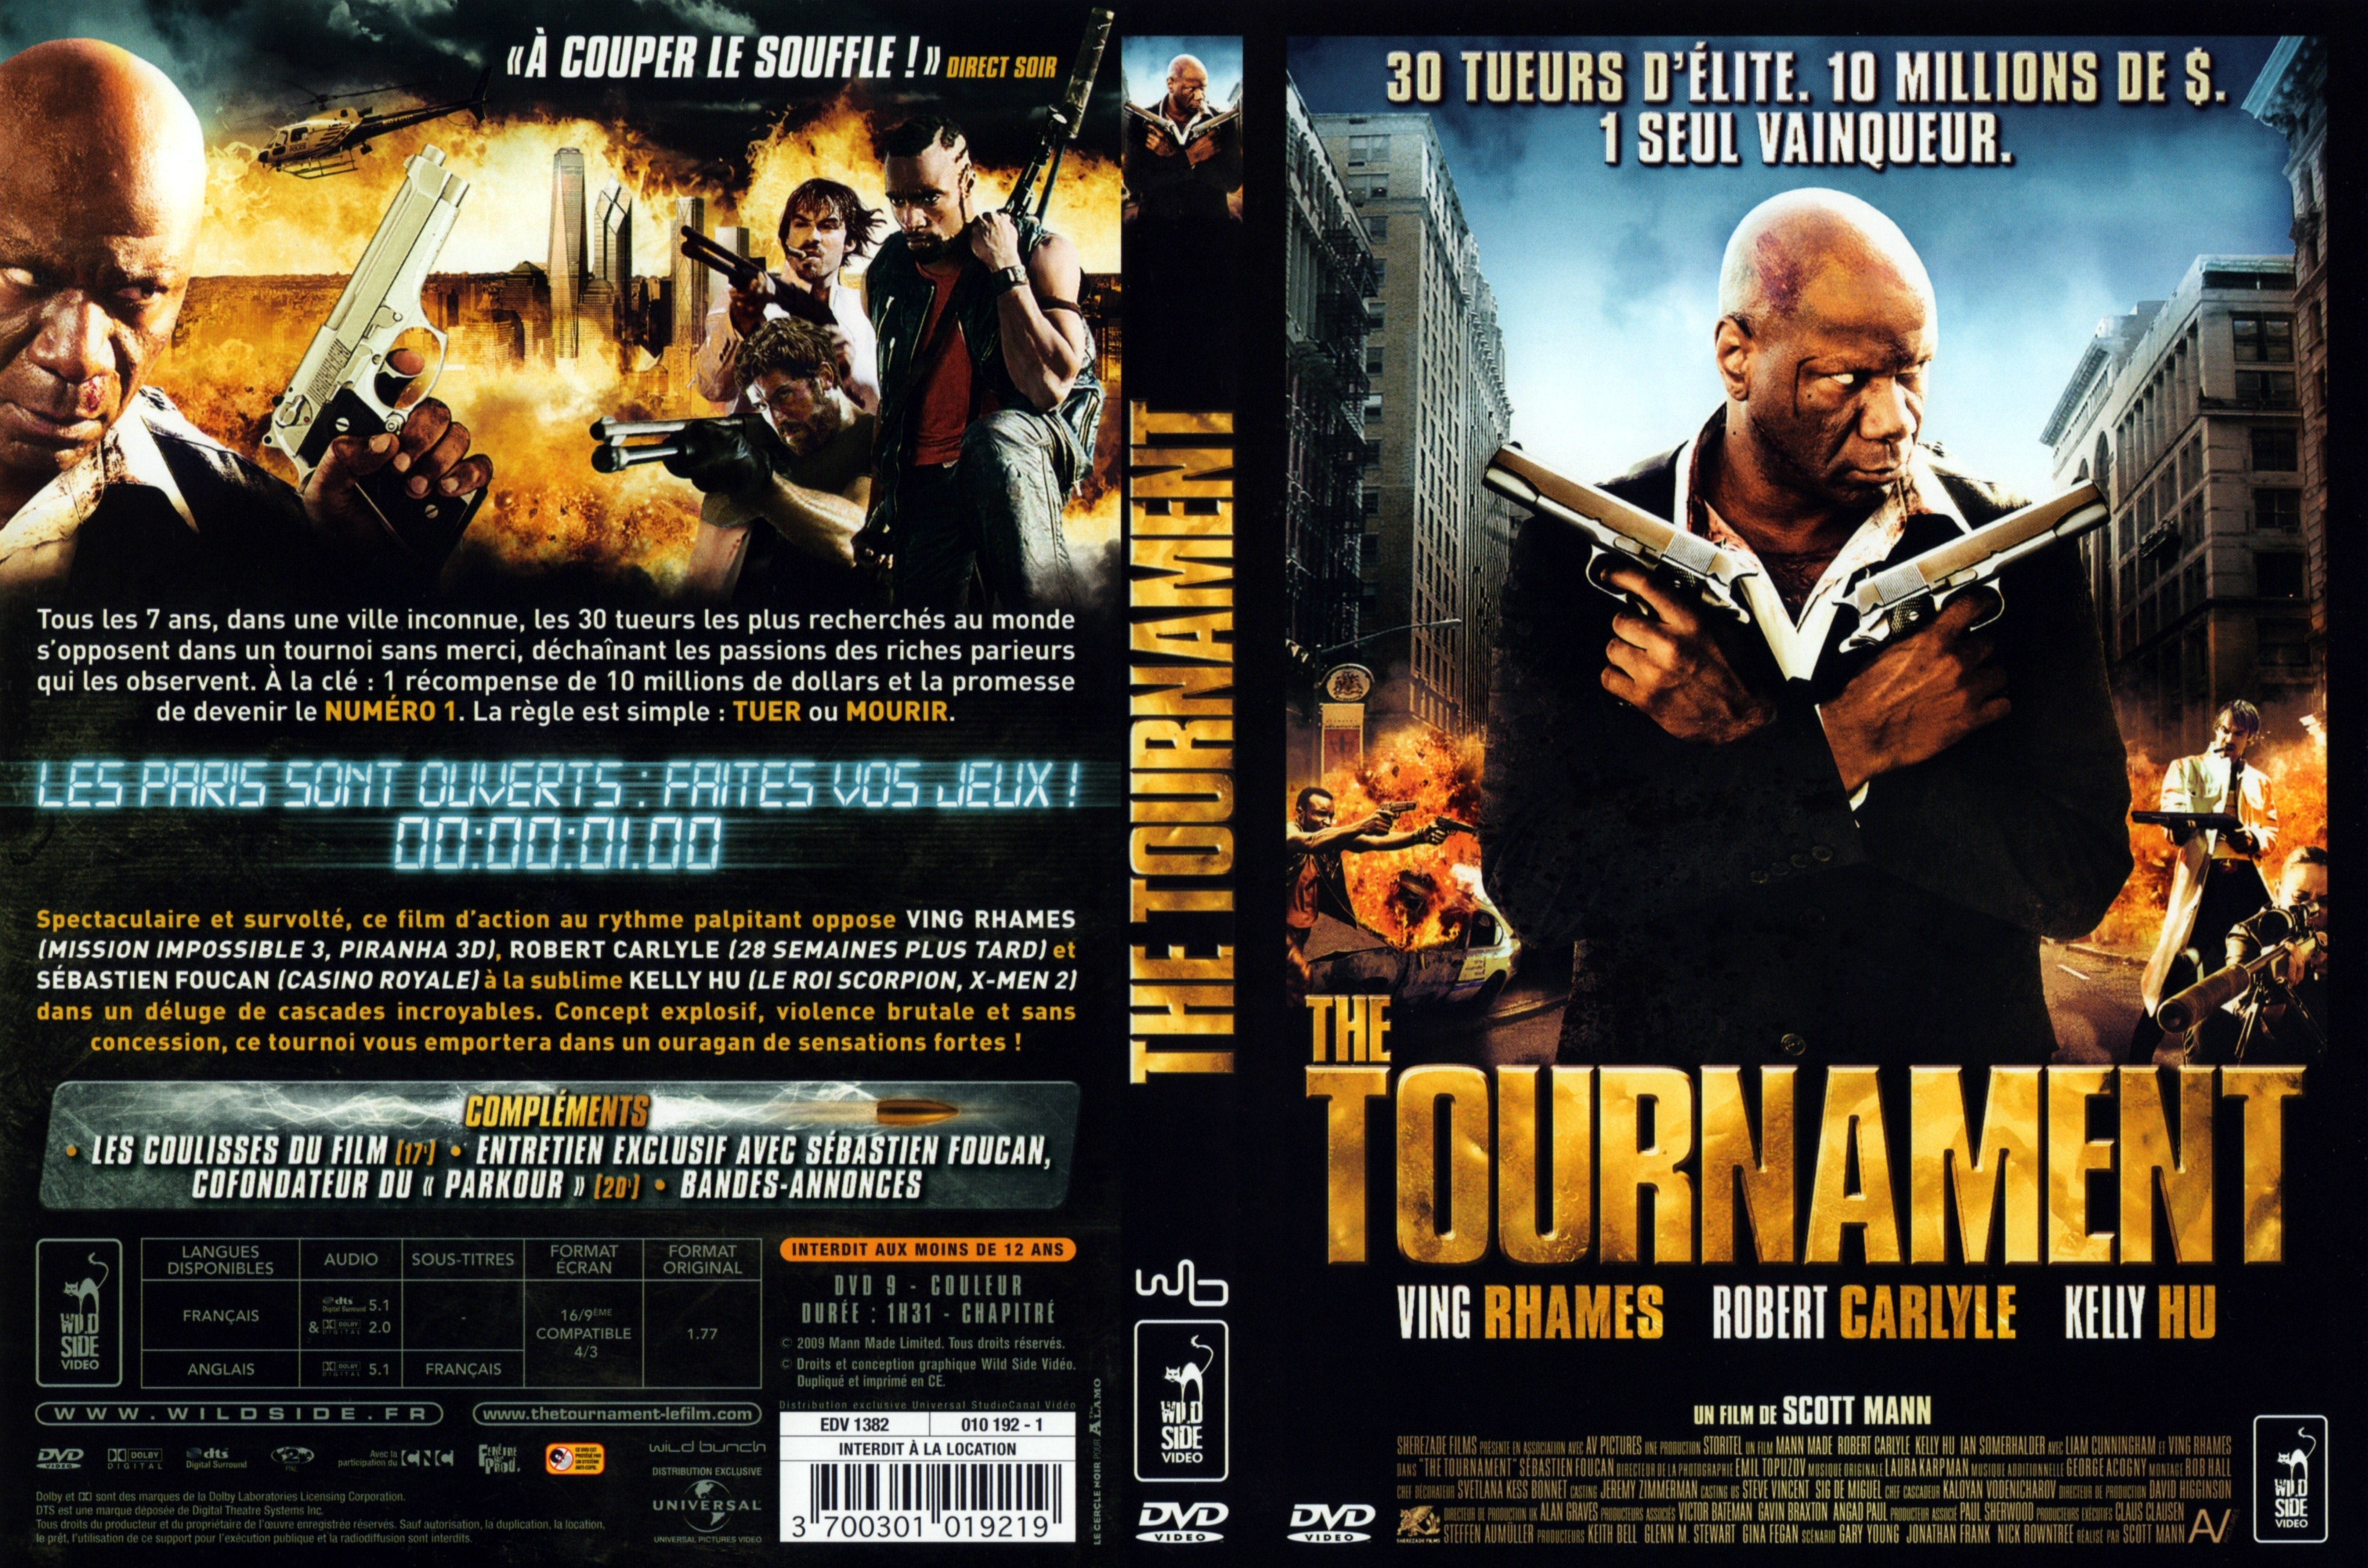 Jaquette DVD de The tournament - Cinéma Passion